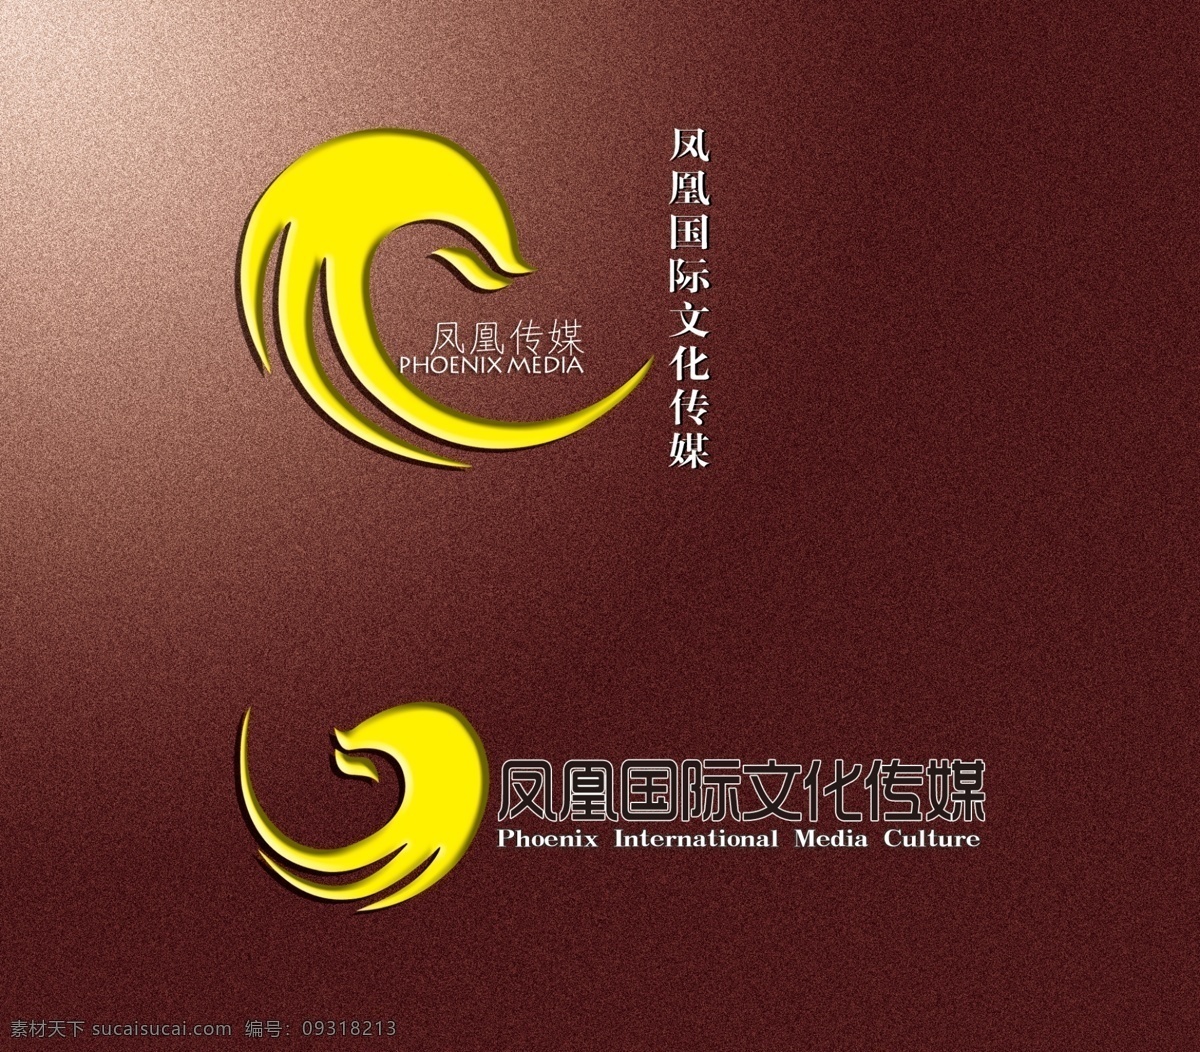 凤凰 传媒 有限公司 logo 模版下载 公司商标 标志设计 广告设计模板 源文件 logo设计